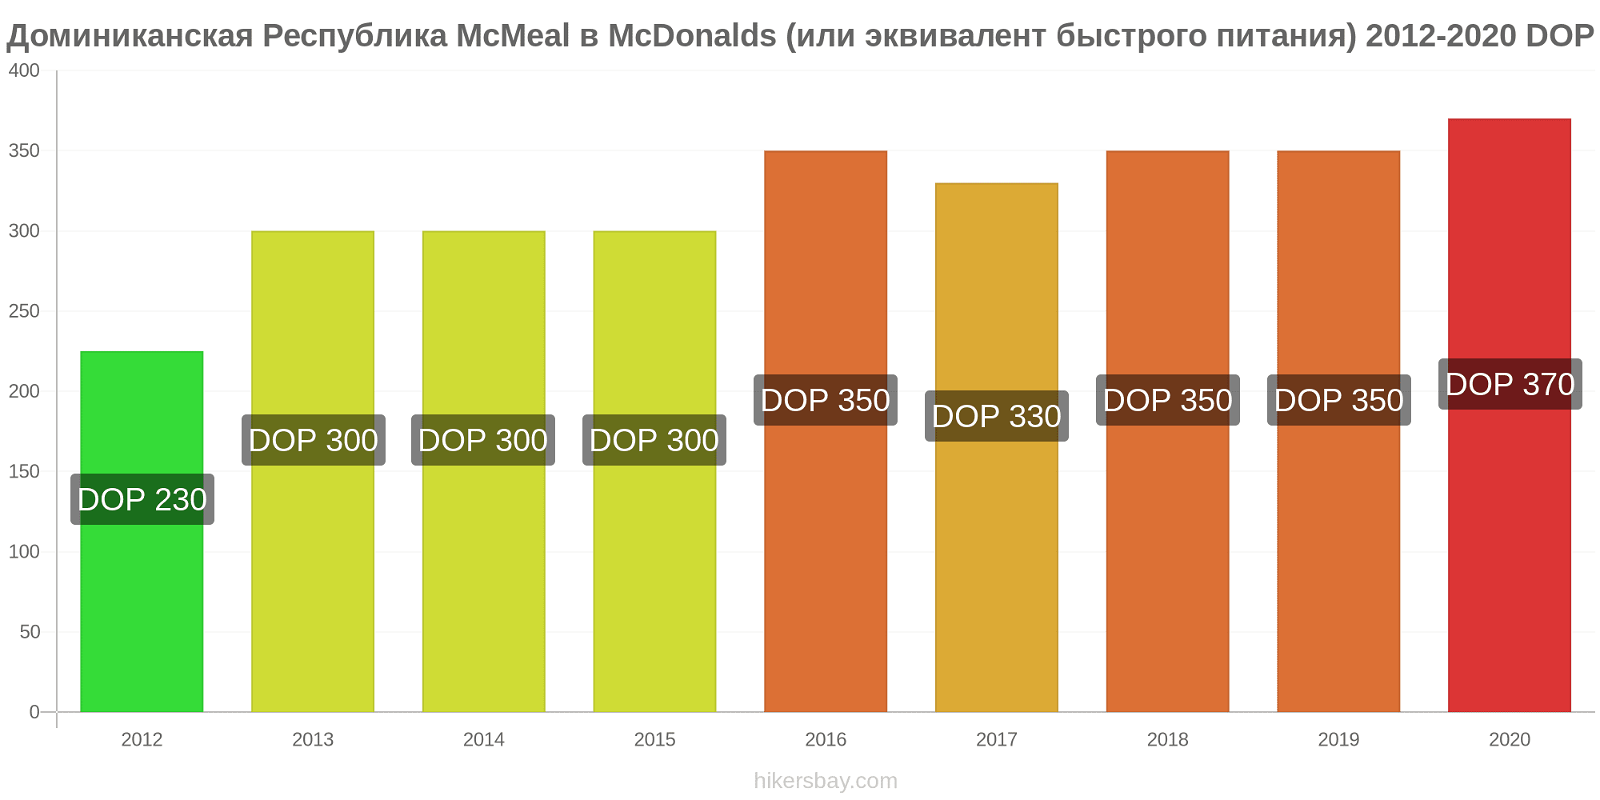 Доминиканская Республика изменения цен McMeal в McDonalds (или эквивалент быстрого питания) hikersbay.com